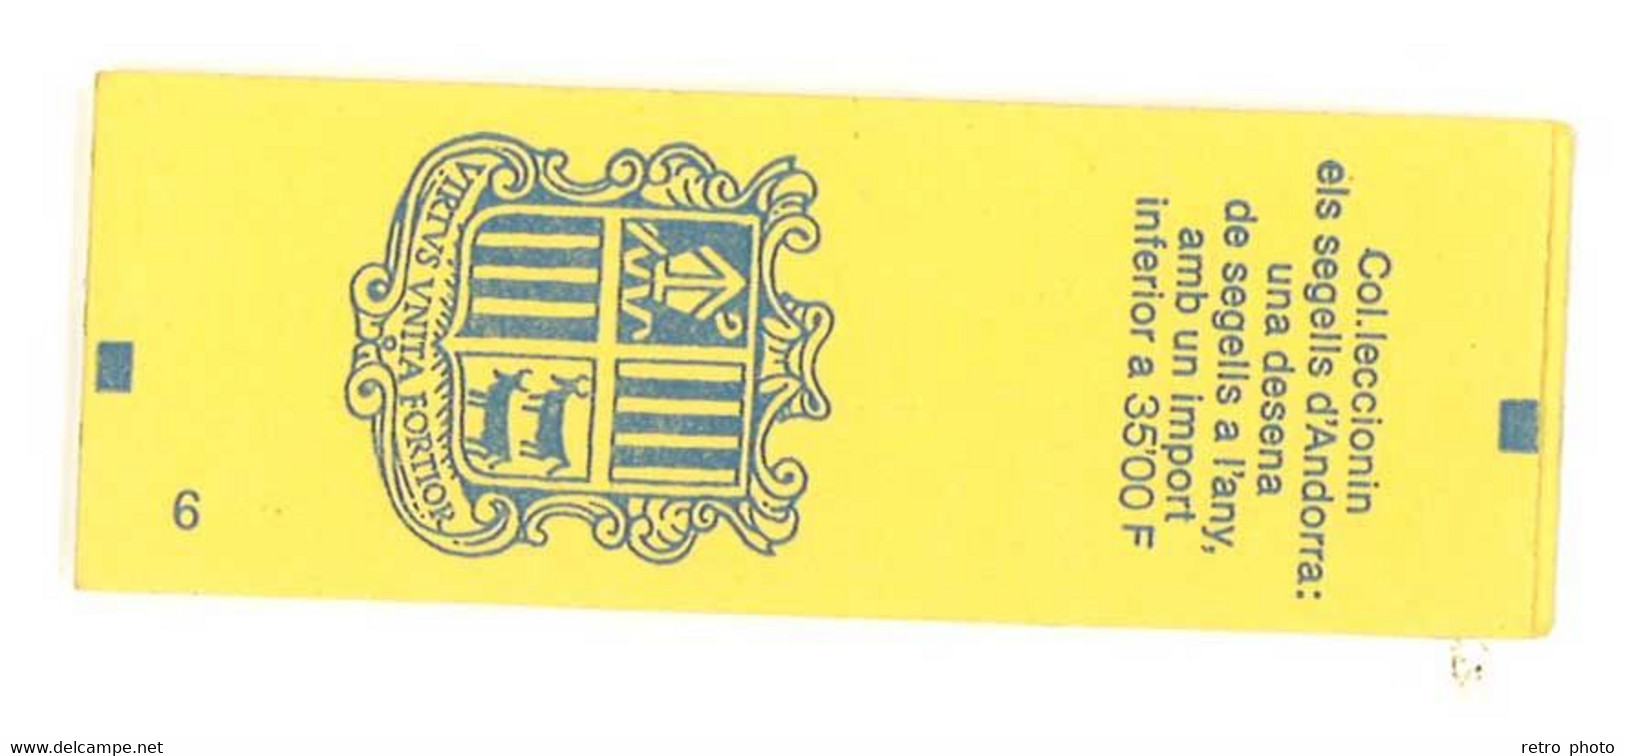 Carnet Andorre / Principat D'Andorra, 10 Timbres à 2,50 Francs N° 409 YT - Libretti